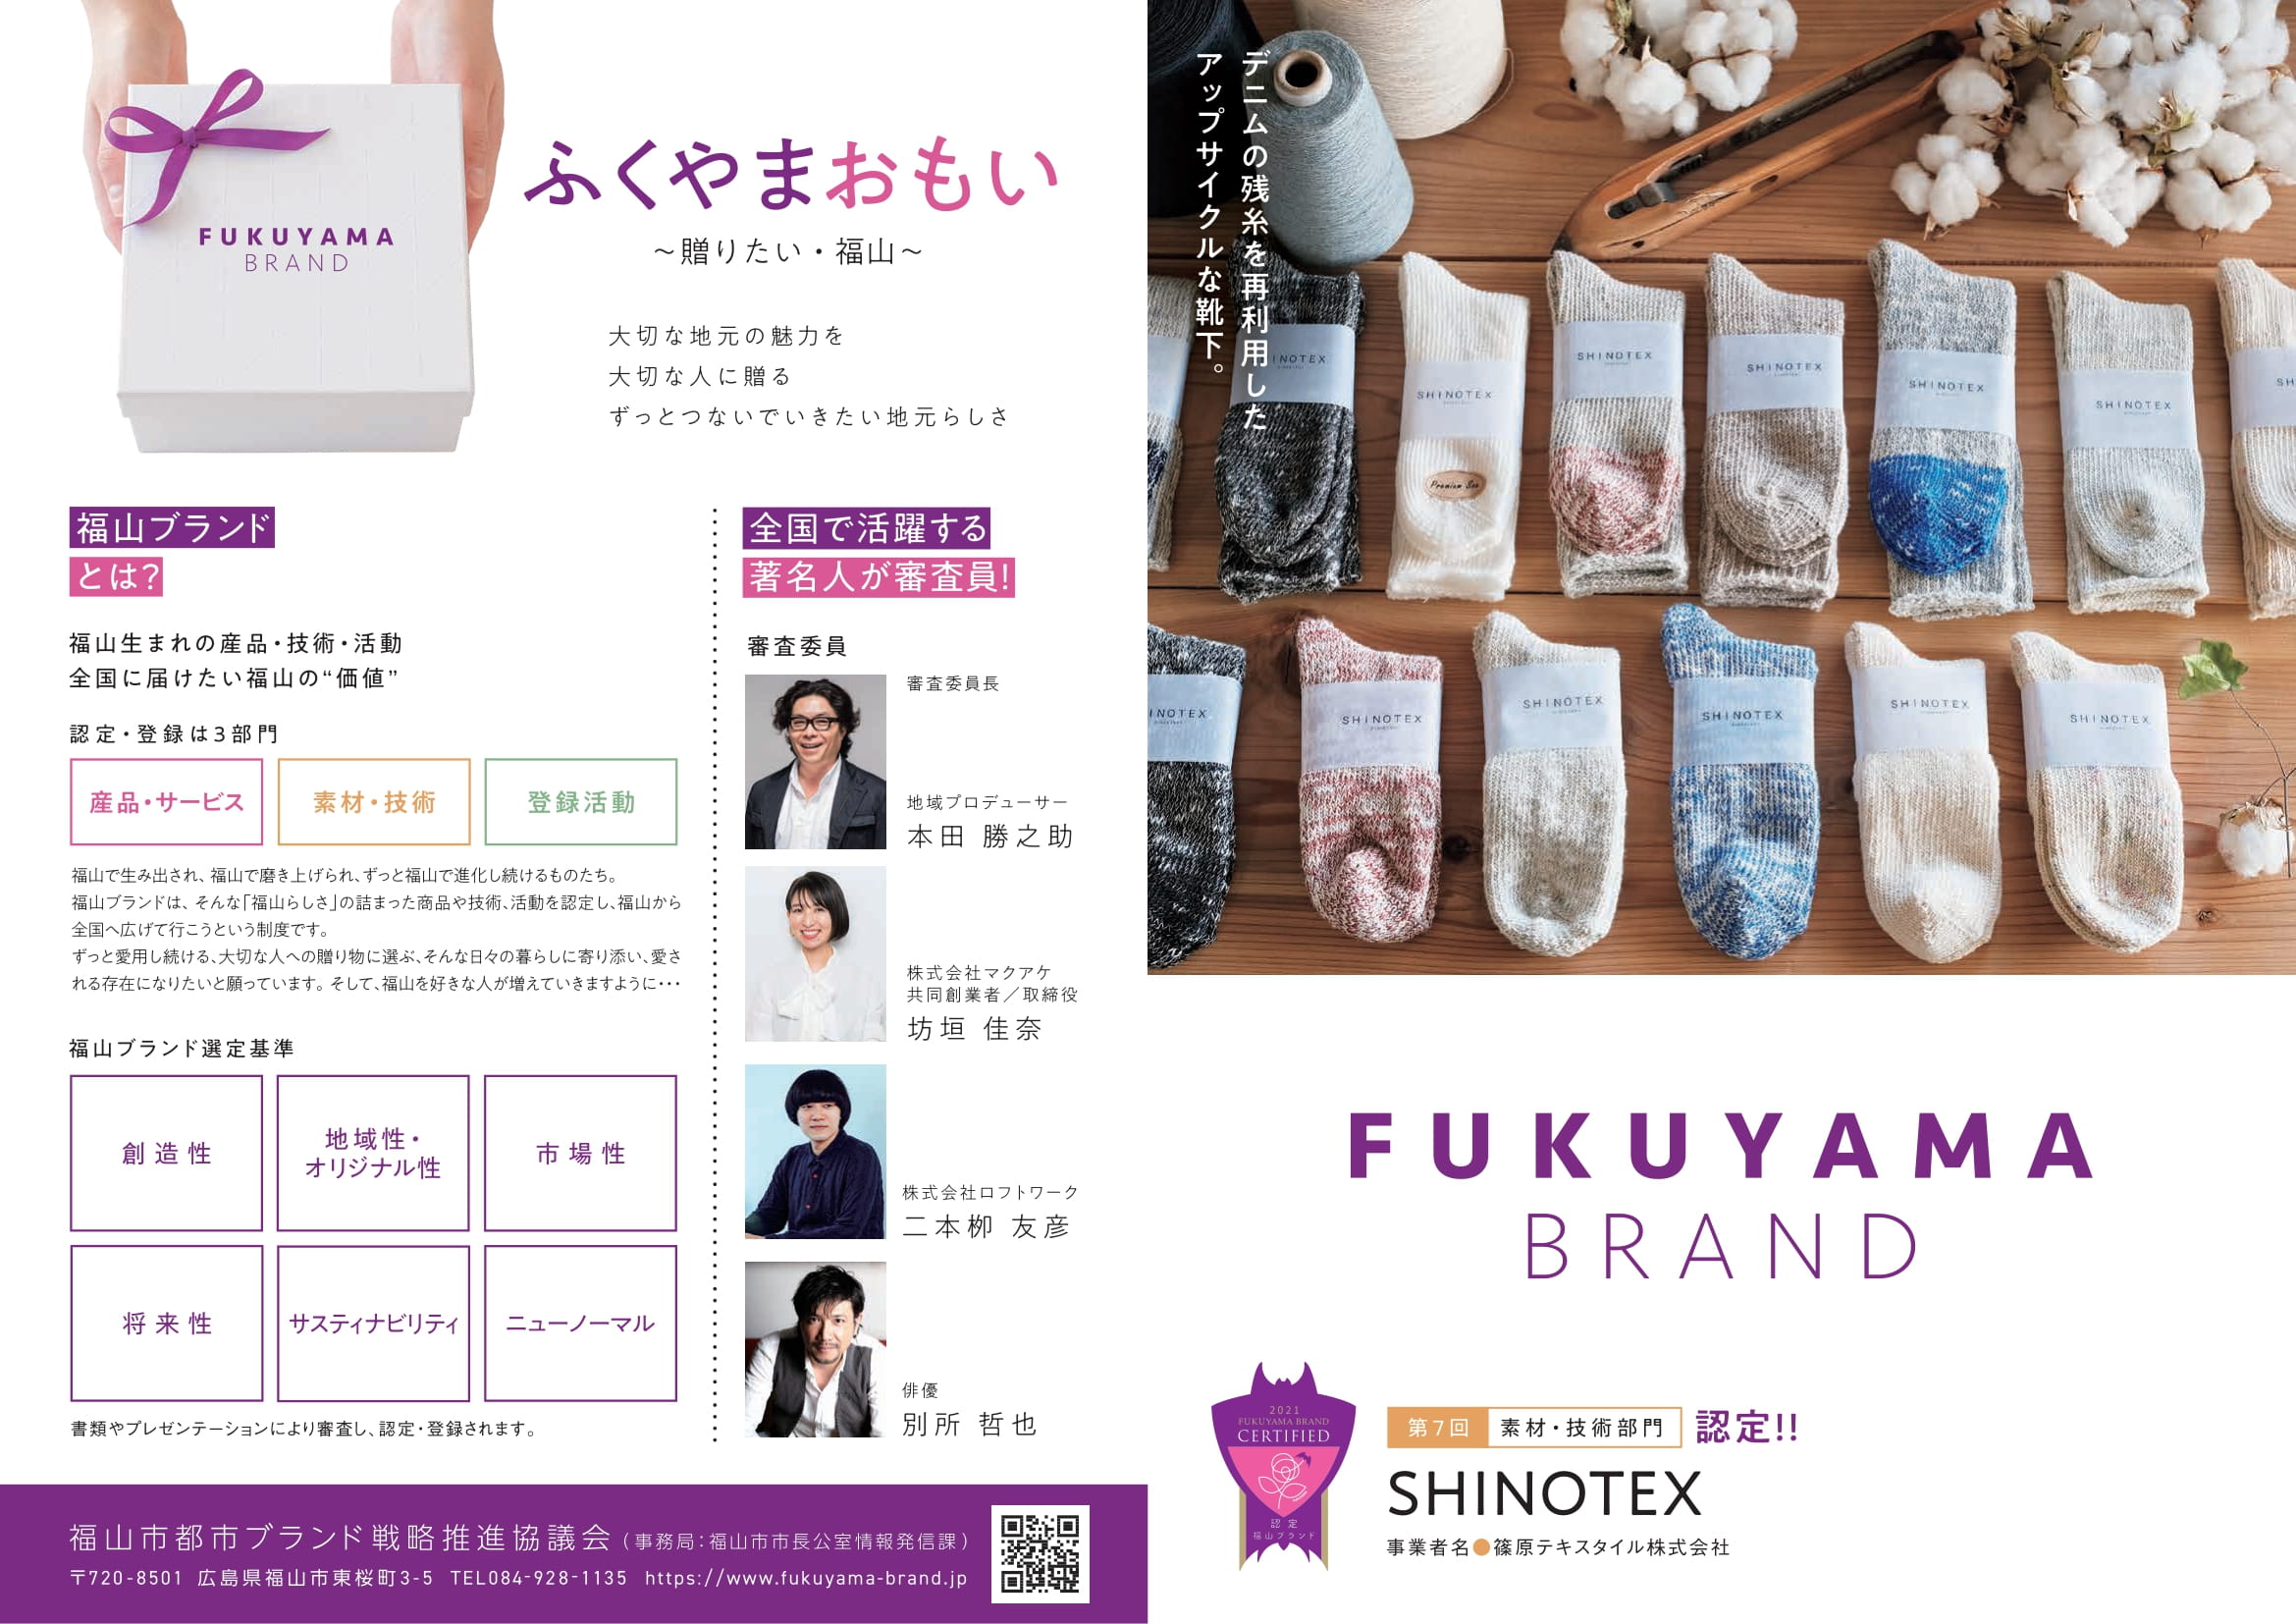 この度、弊社の靴下を含めた"SHINOTEX"ブランドが、福山ブランドに認定されました。